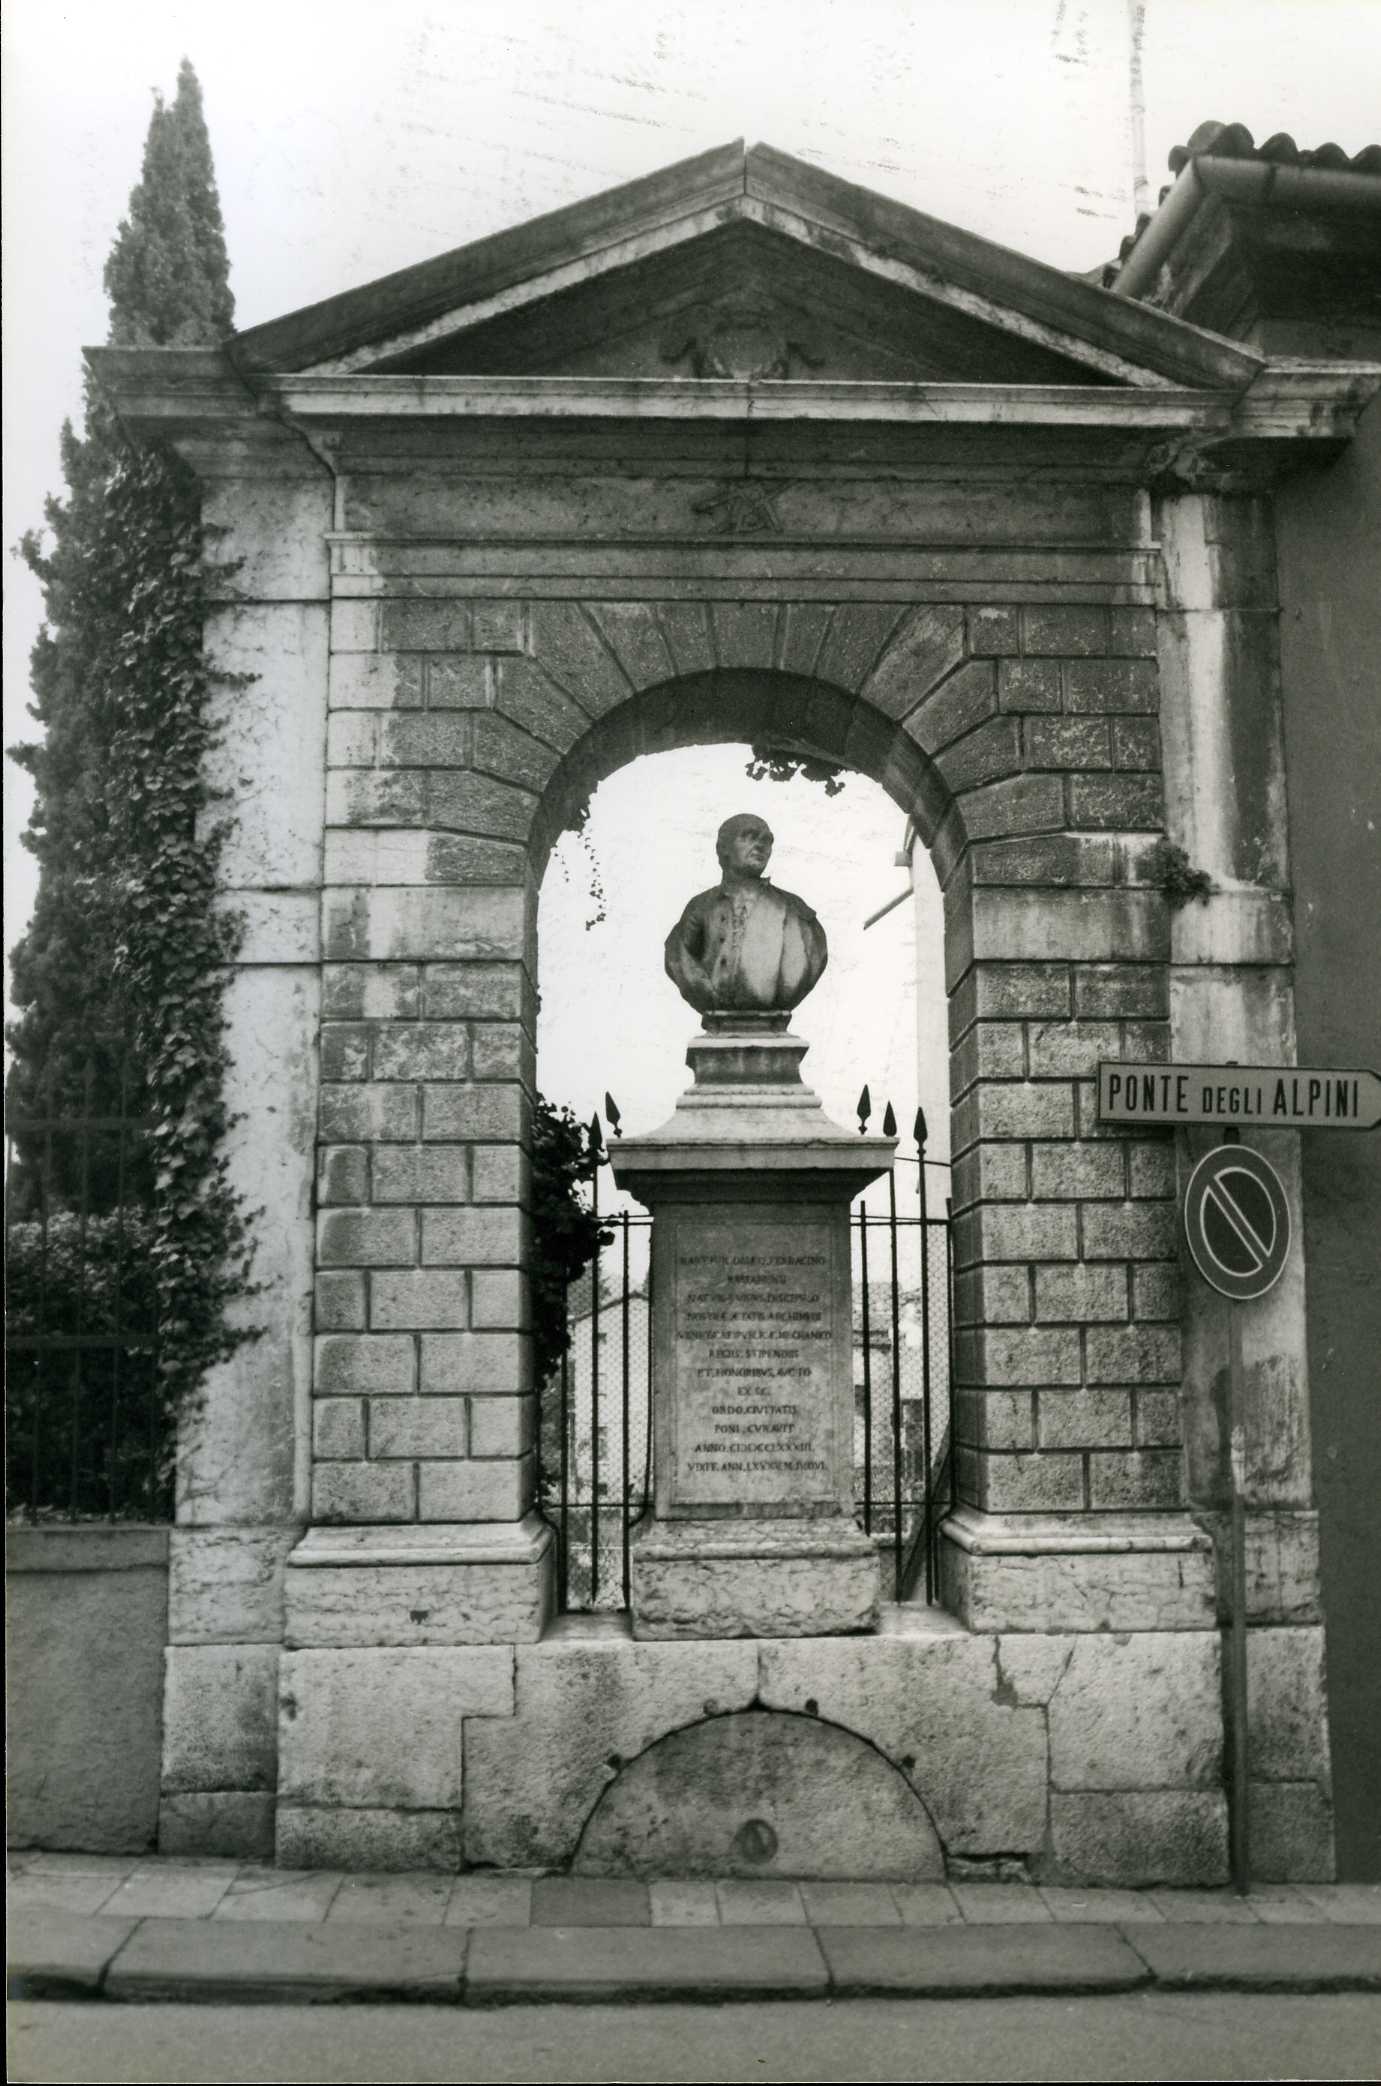 Monumento a Bartolomeo Ferracina (monumento celebrativo, pubblico) - Bassano del Grappa (VI)  (XVIII)